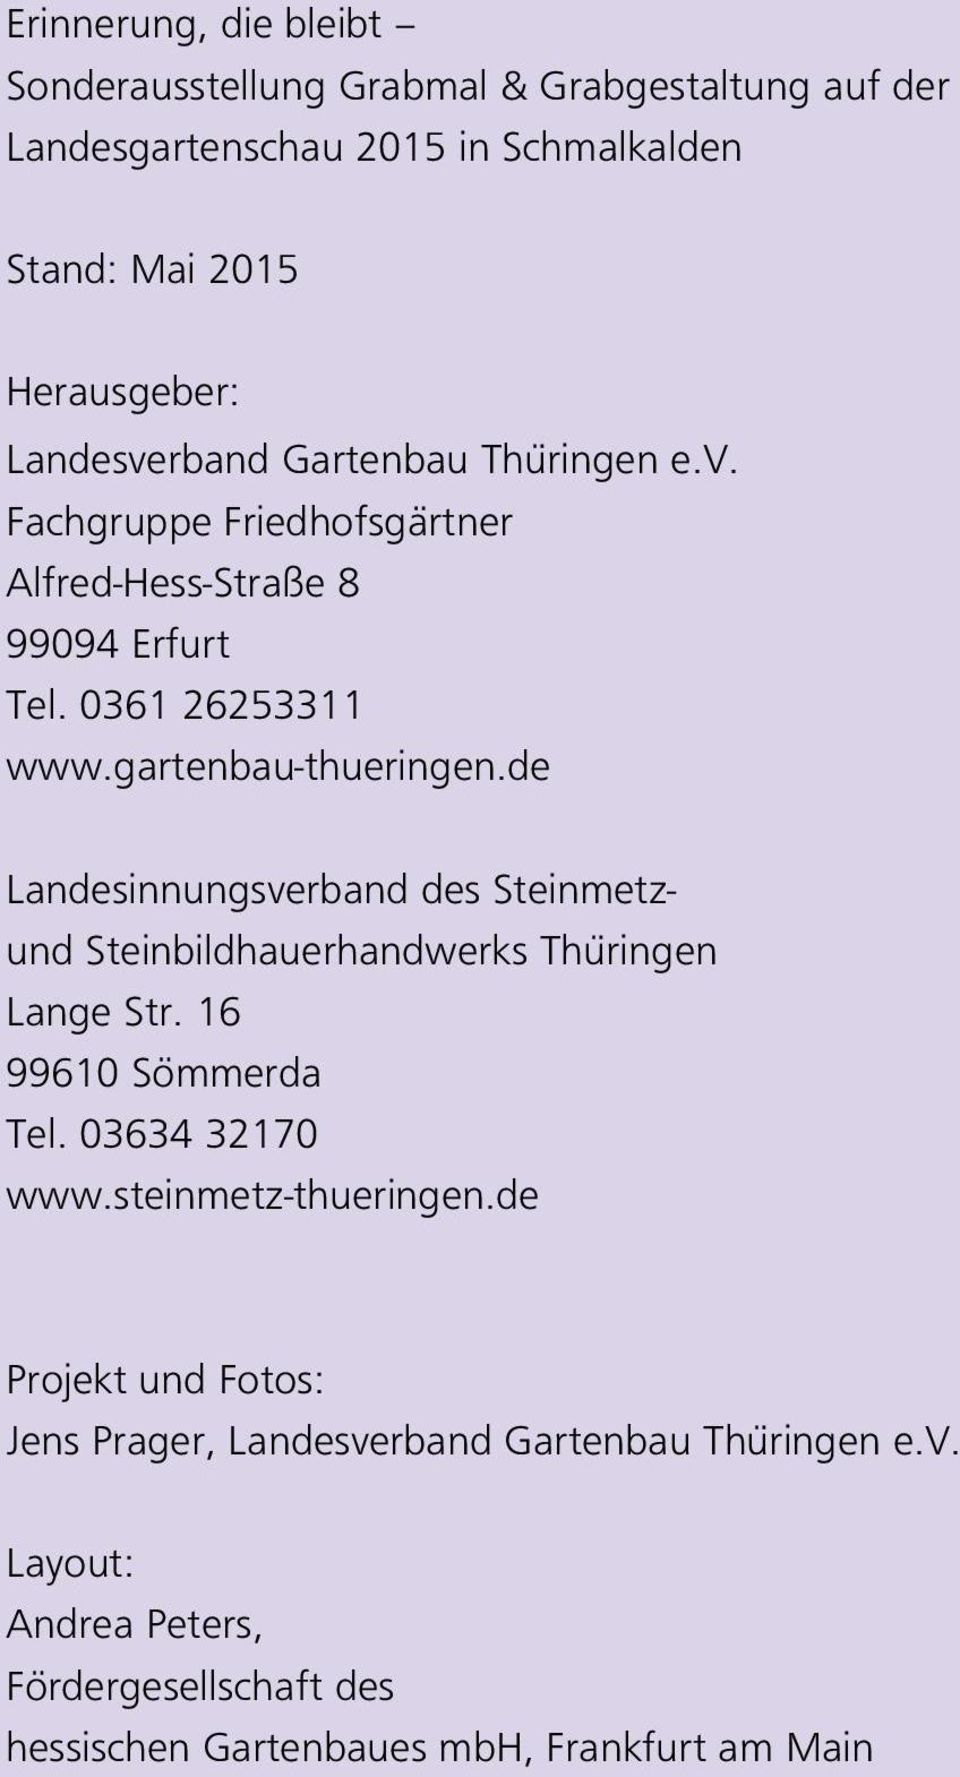 de Landesinnungsverband des Steinmetzund Steinbildhauerhandwerks Thüringen Lange Str. 16 99610 Sömmerda Tel. 03634 32170 www.steinmetz-thueringen.